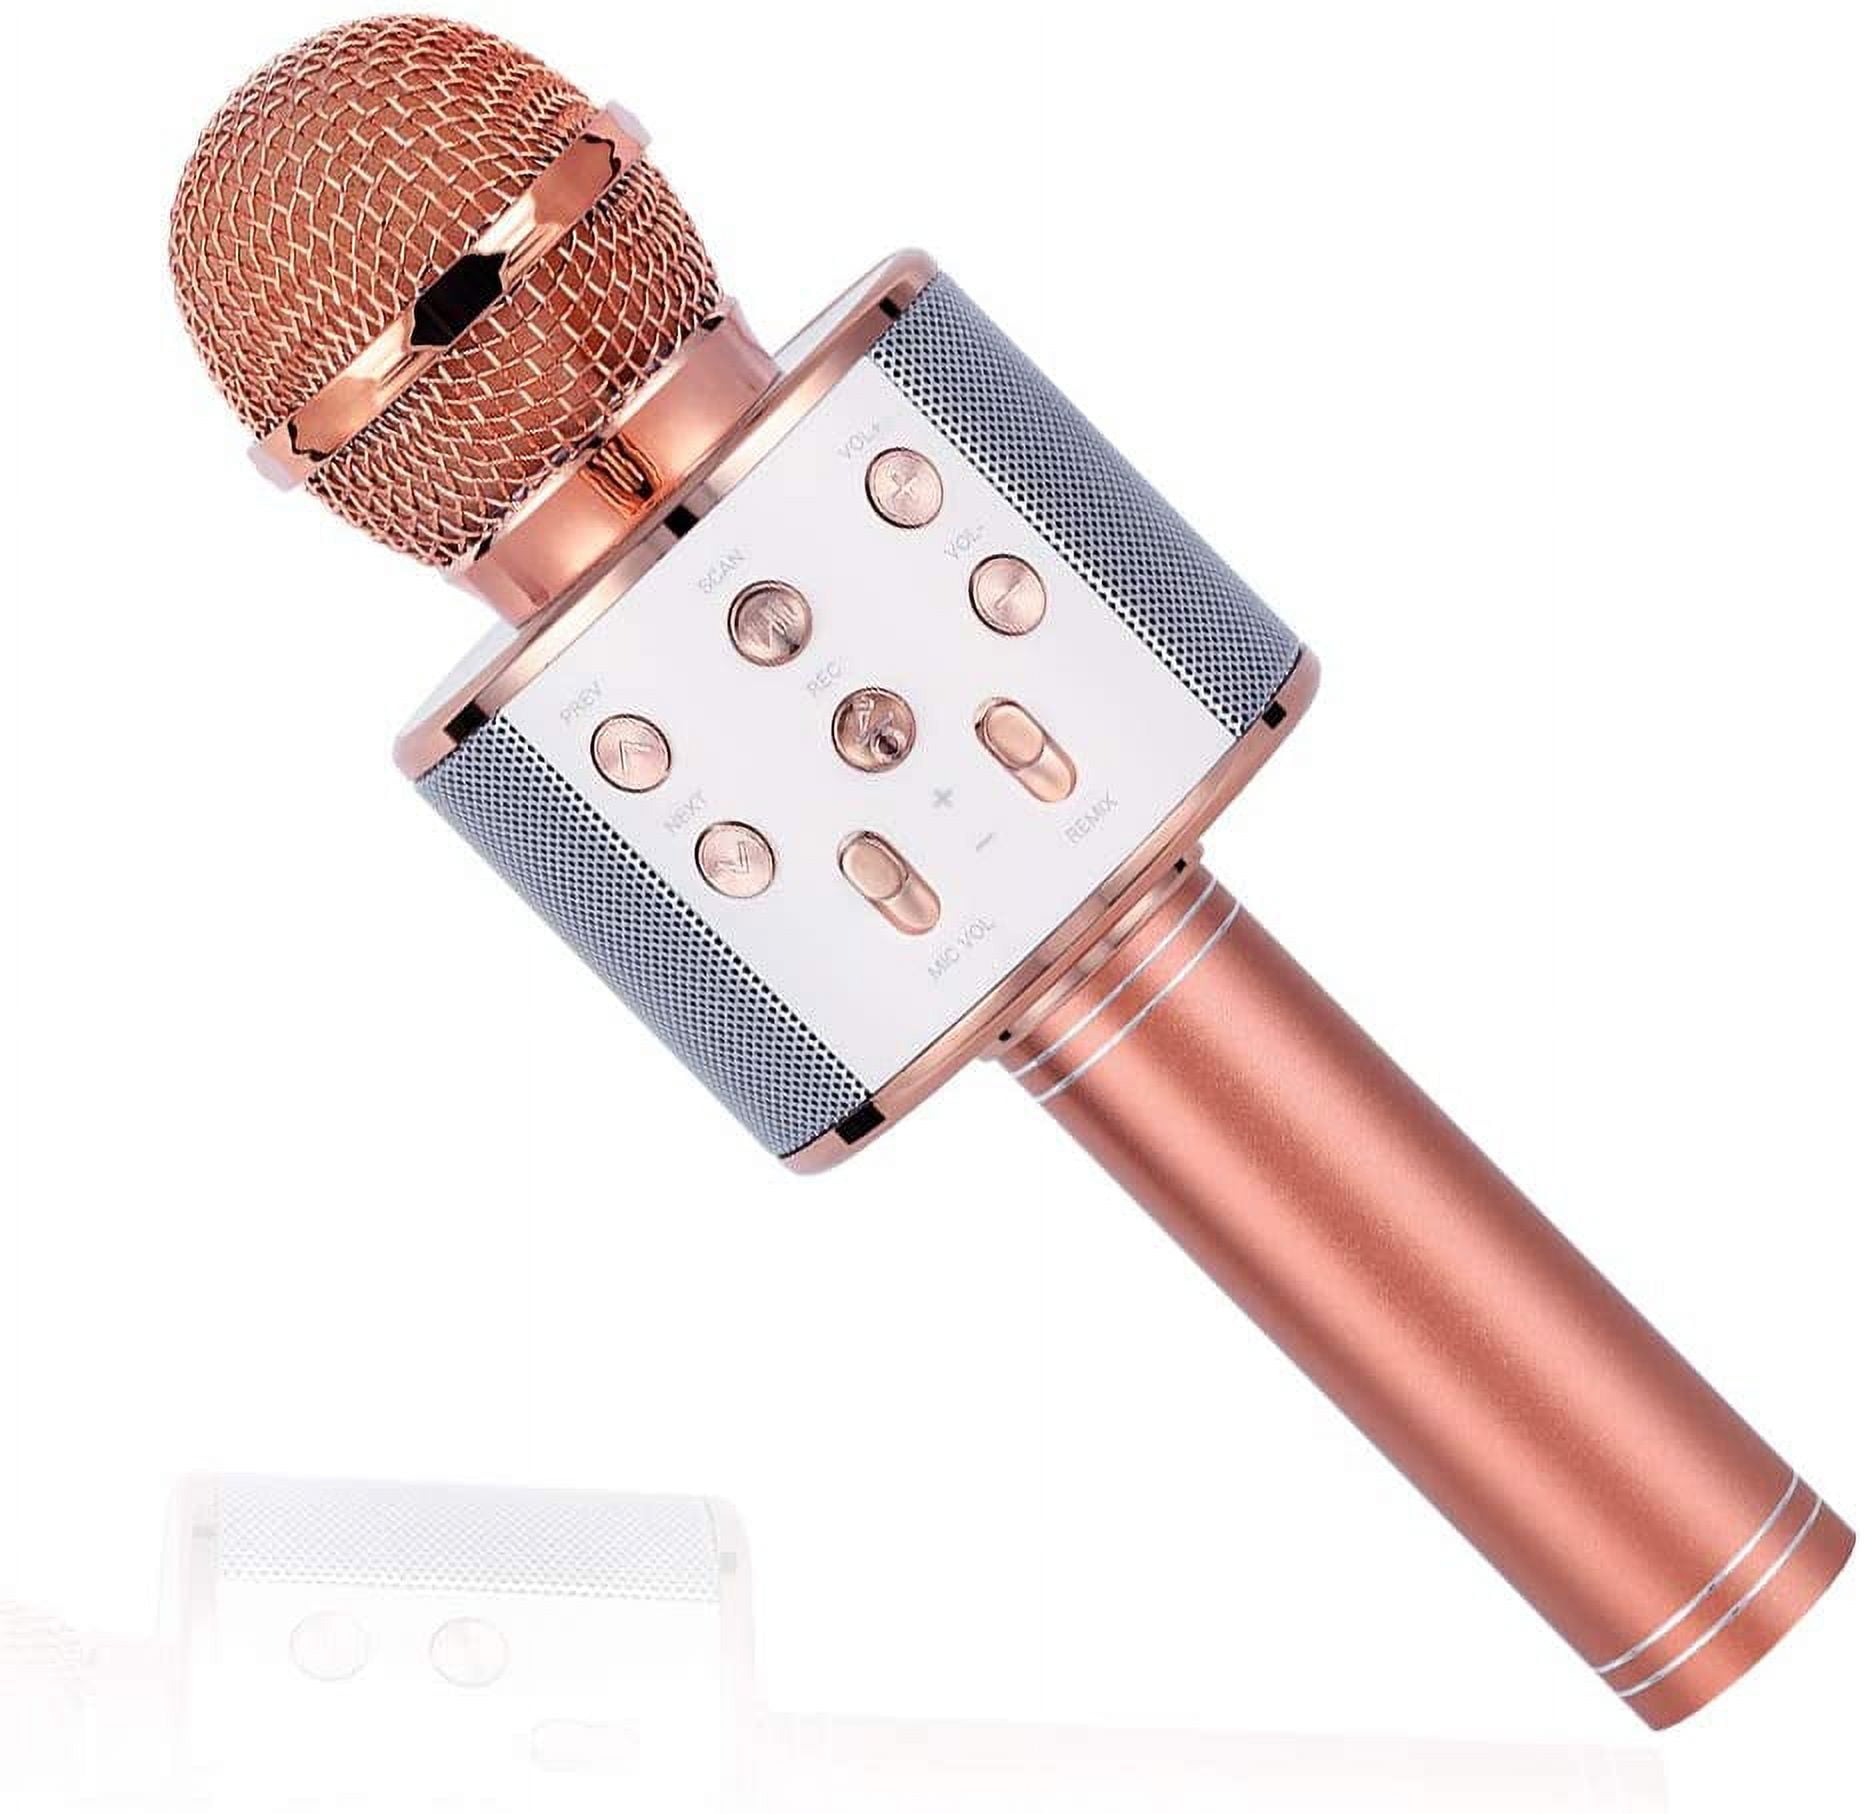 Microphone Android iOs Karaoké Bluetooth 4.2 Haut-Parleur Puissance 5W Rose  YONIS au meilleur prix